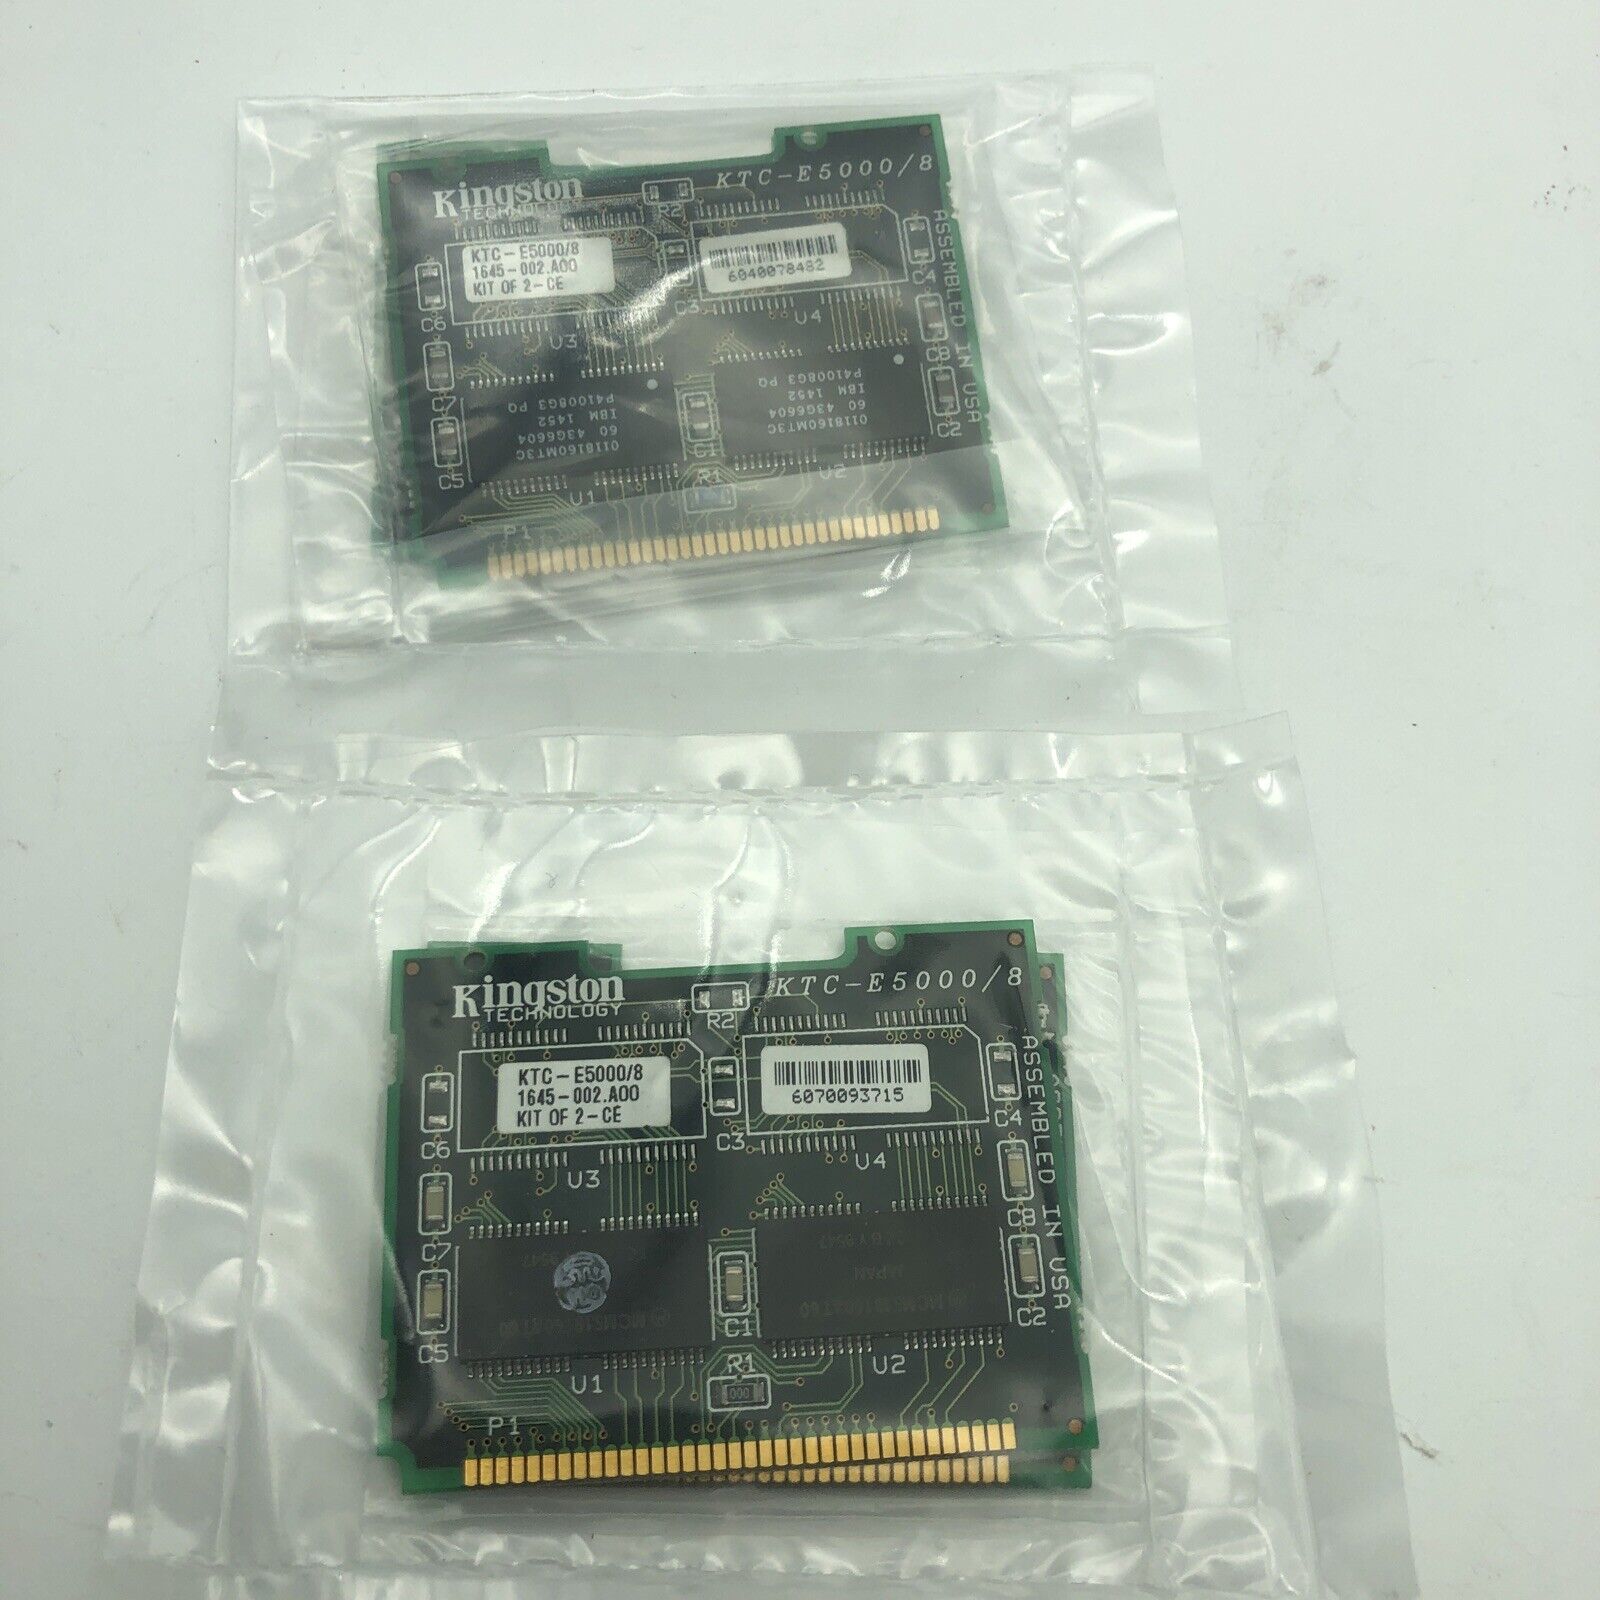 Compaq 16 MB Memory Kit LTE 5000 5400 Series  2 x 213536 KTC E5000 8 mb Kingston